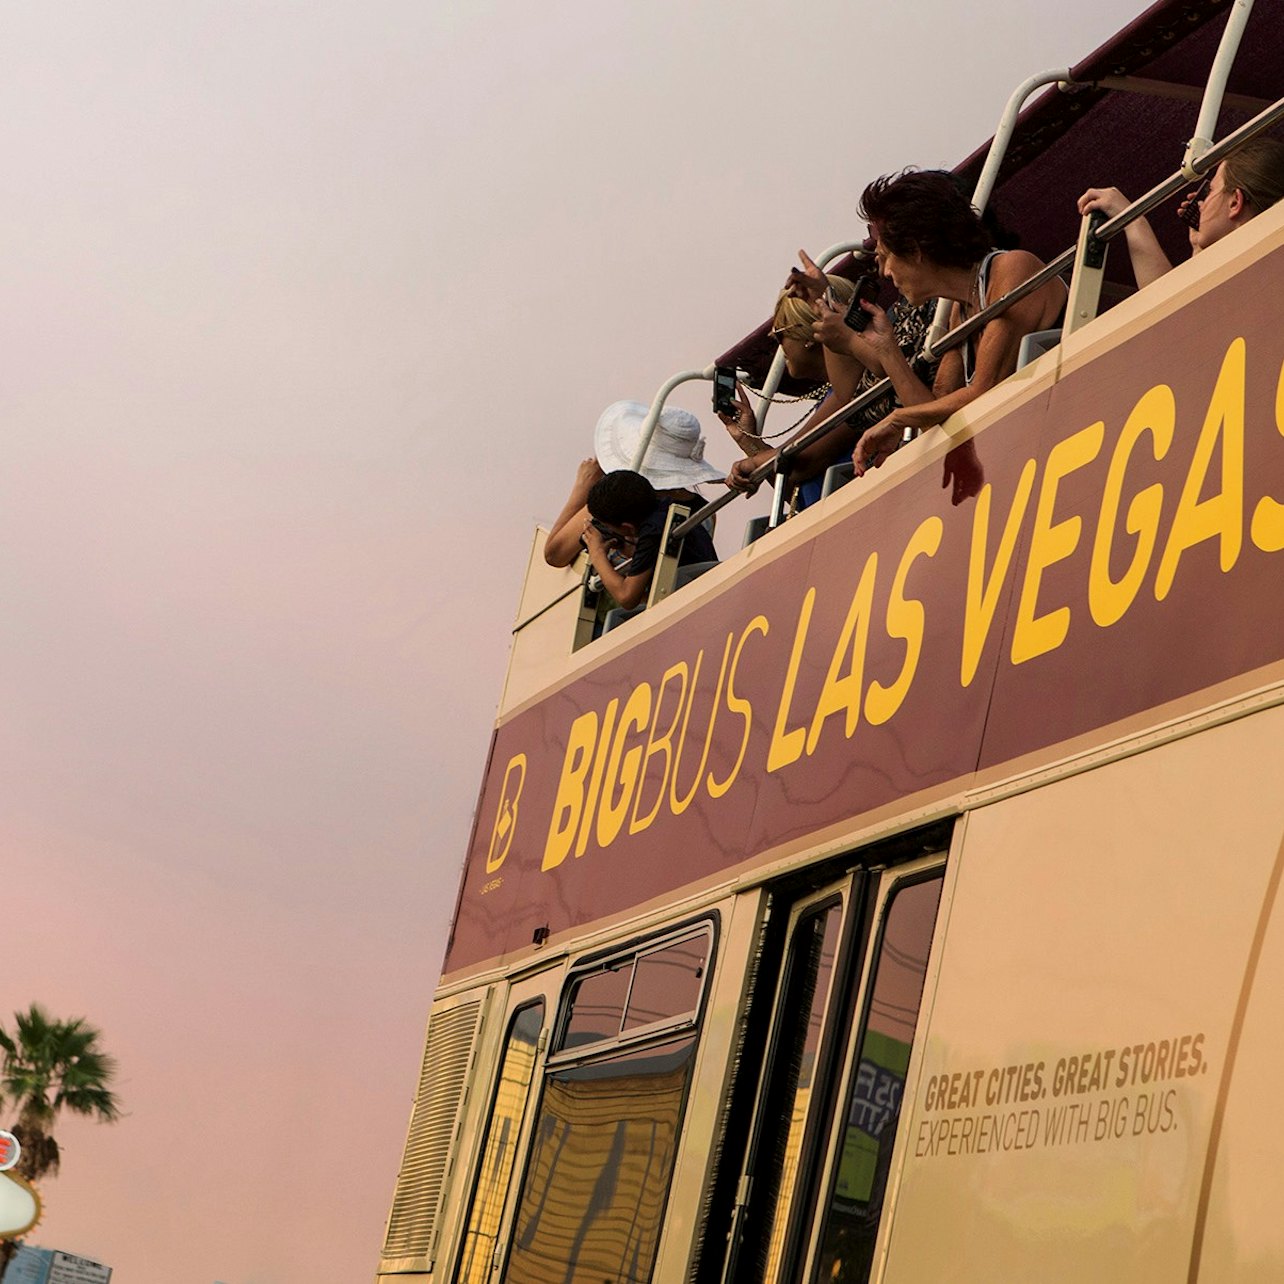 Big Bus Las Vegas: Hop-on Hop-off Bus Tour - Accommodations in Las Vegas